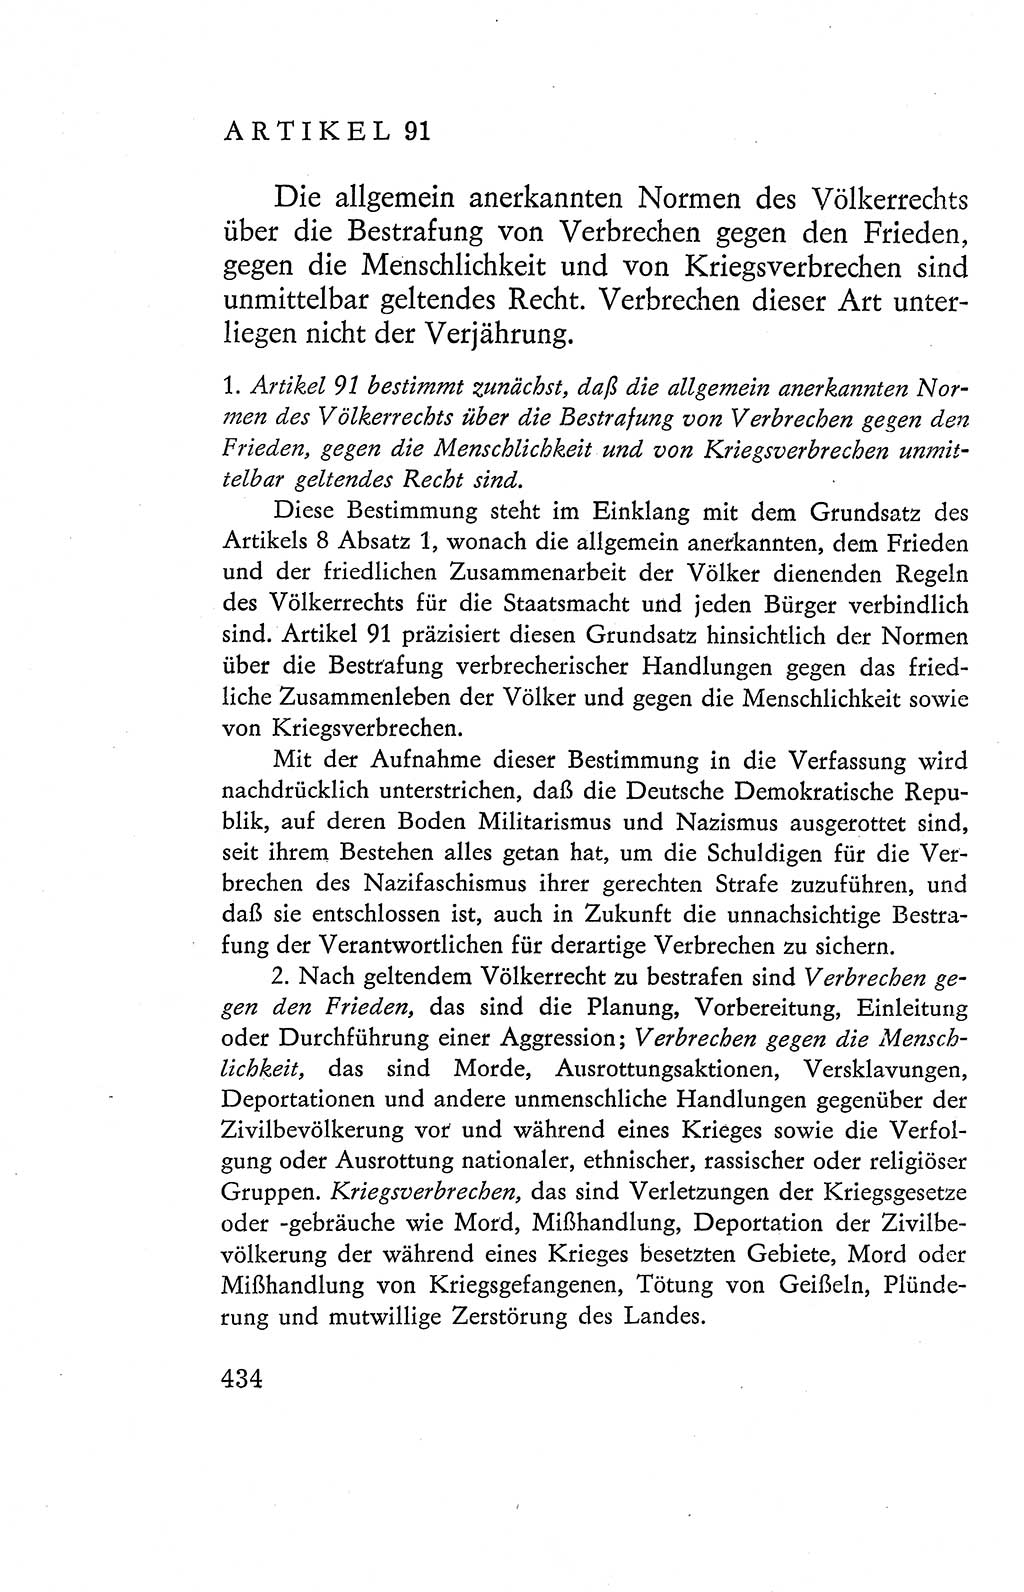 Verfassung der Deutschen Demokratischen Republik (DDR), Dokumente, Kommentar 1969, Band 2, Seite 434 (Verf. DDR Dok. Komm. 1969, Bd. 2, S. 434)